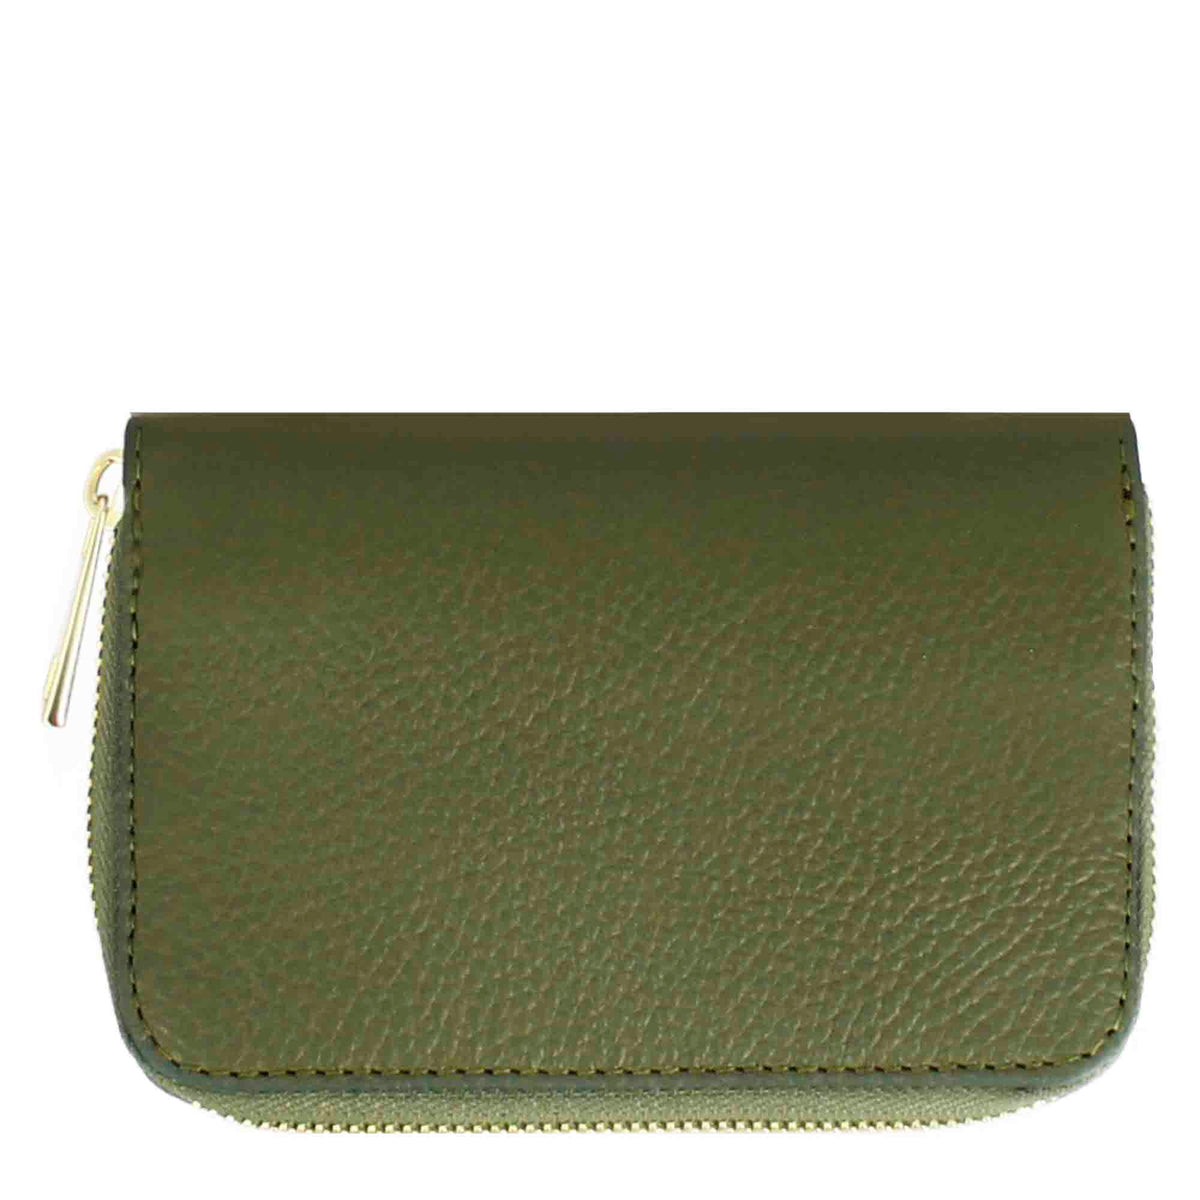 Women's medium wallet in leather with zip